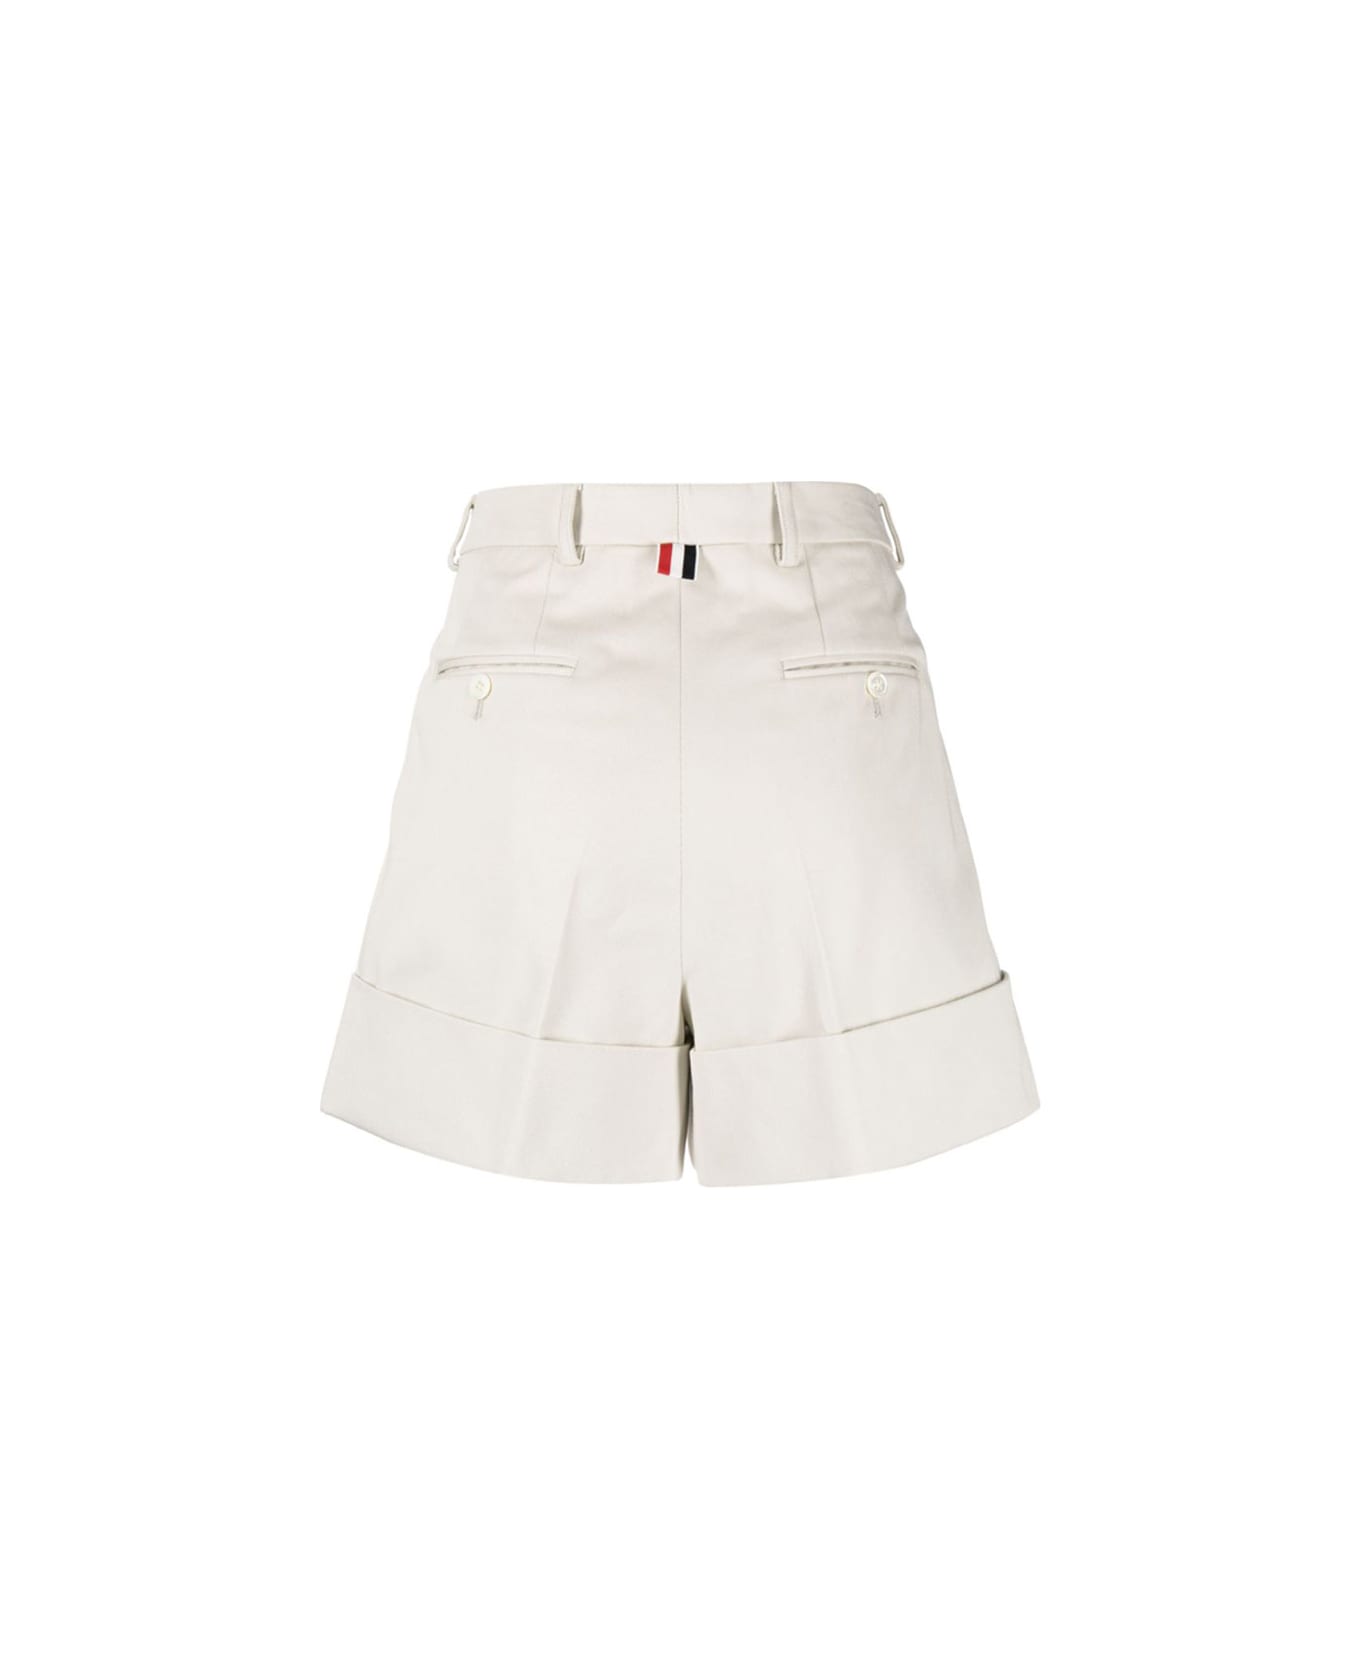 Thom Browne White Cotton Shorts - NATURAL WHITE ショートパンツ